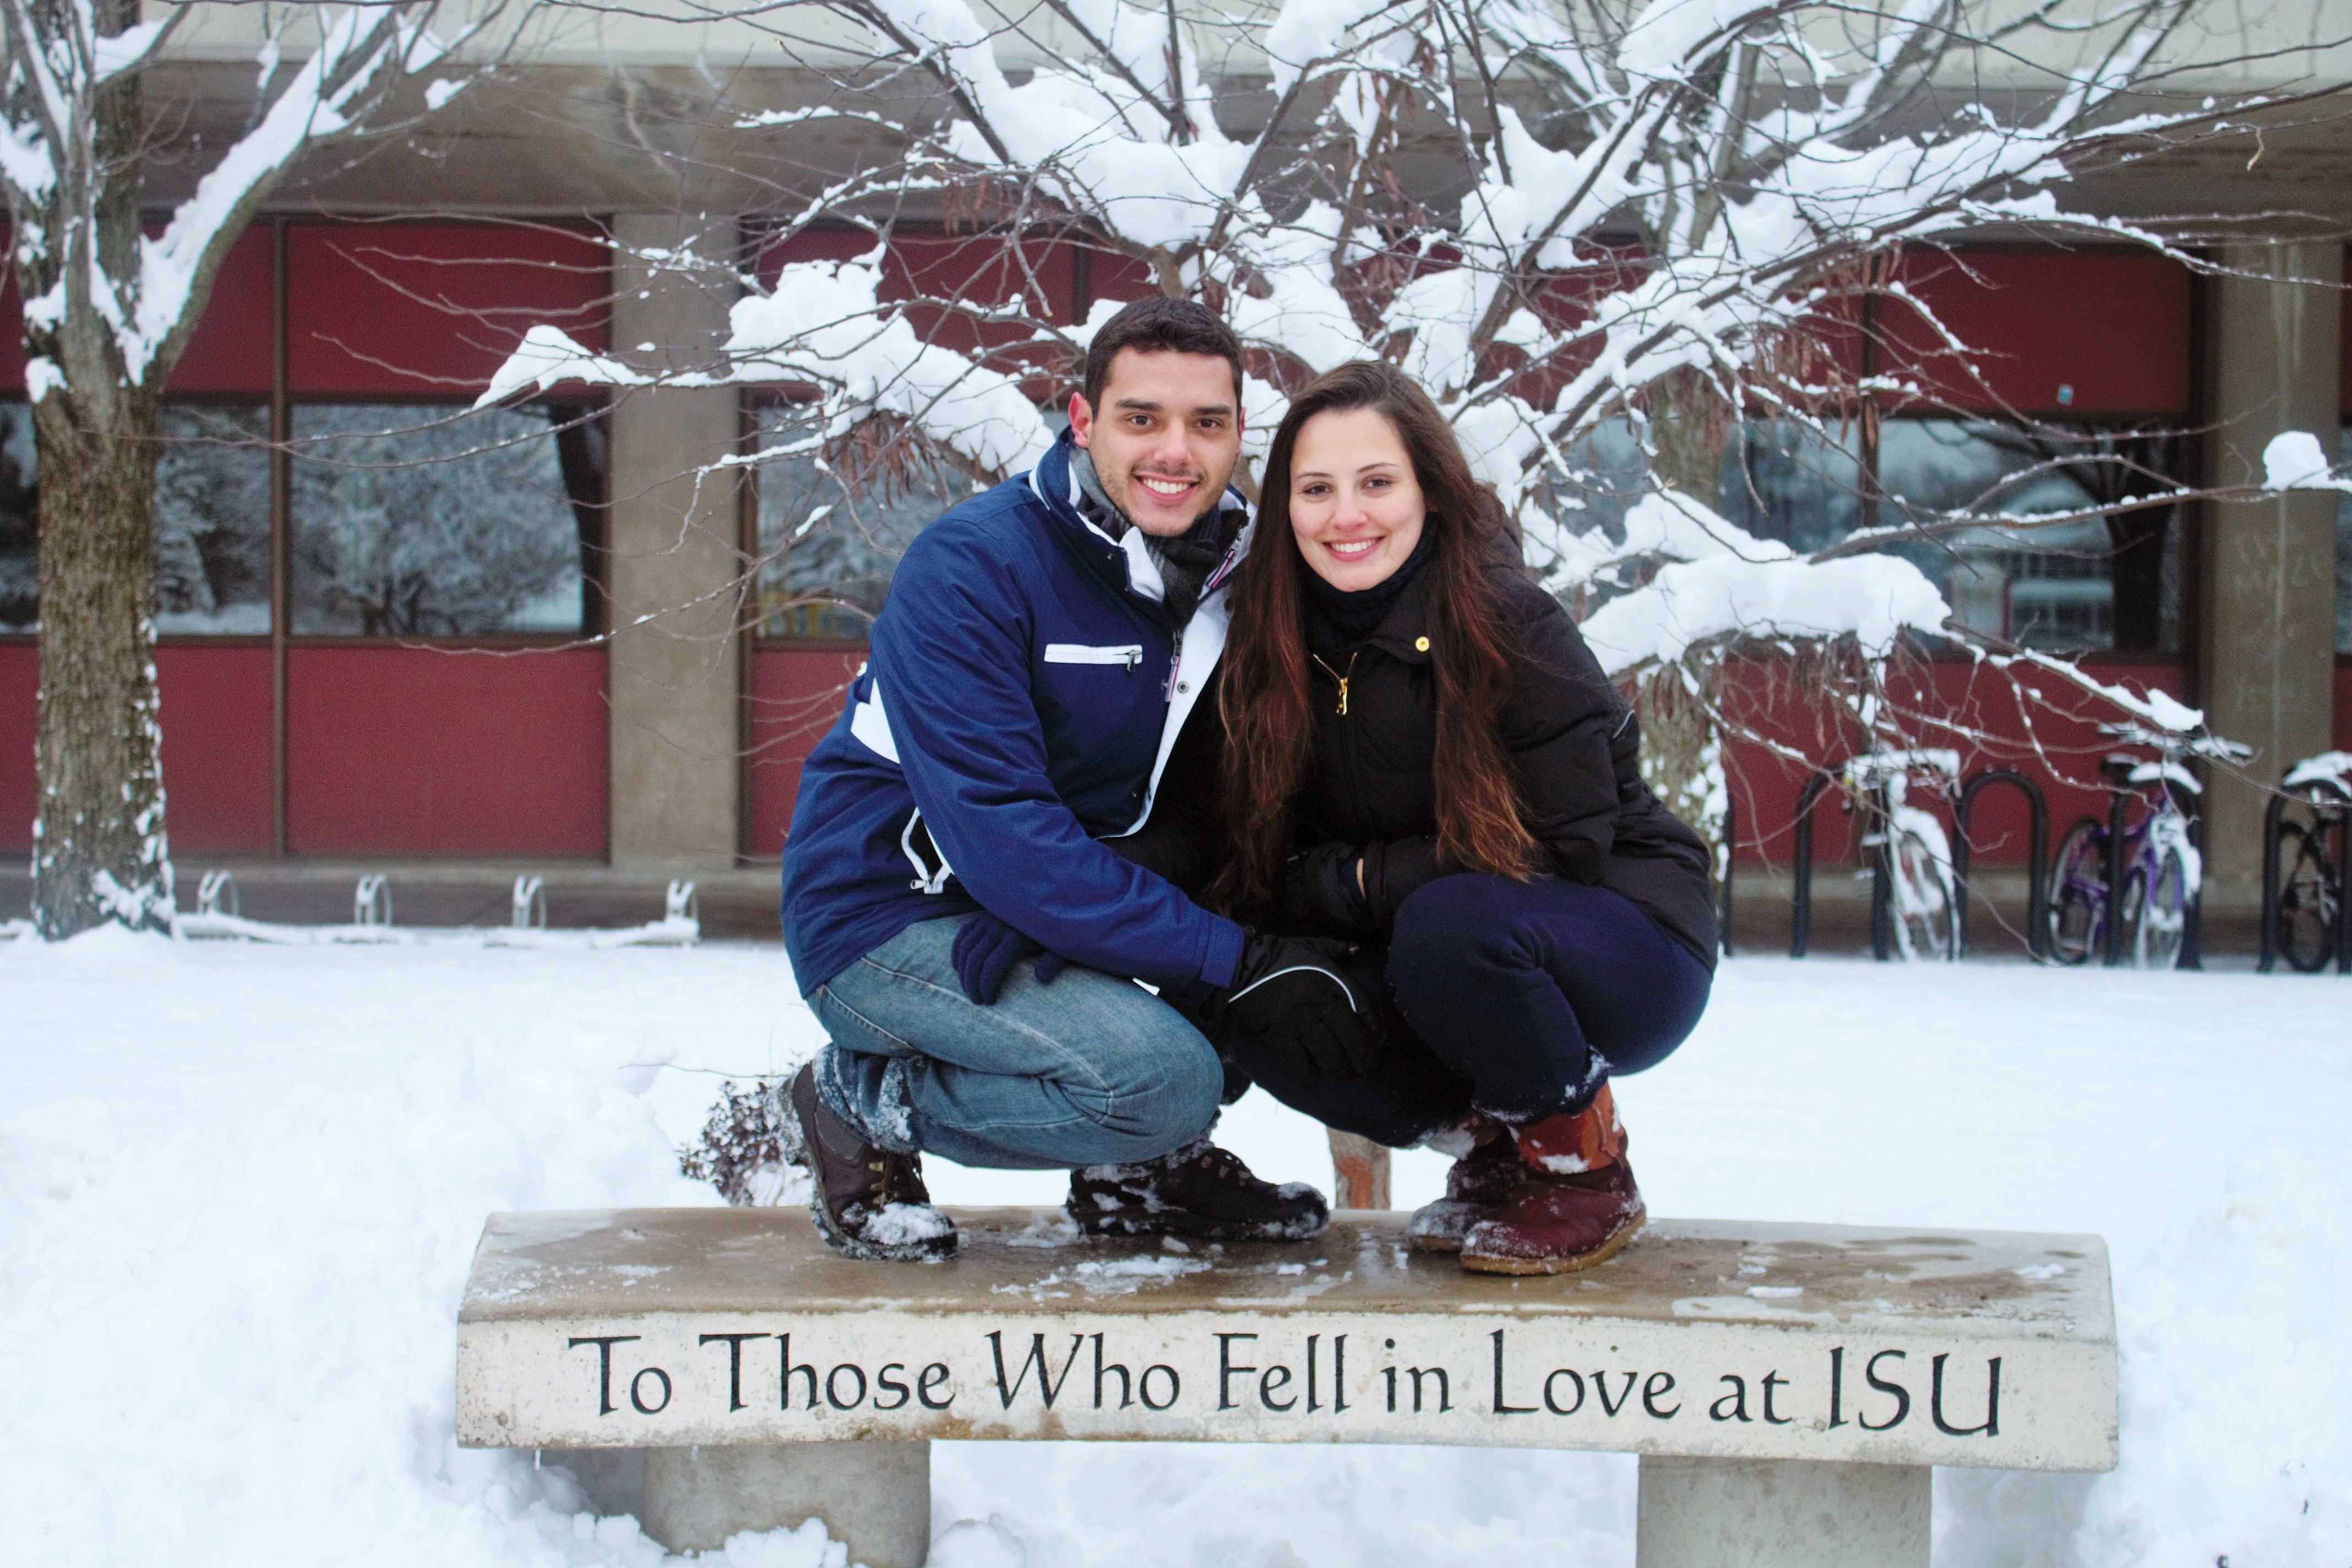 Diogo Marson and Nathalia Prado on the love bench